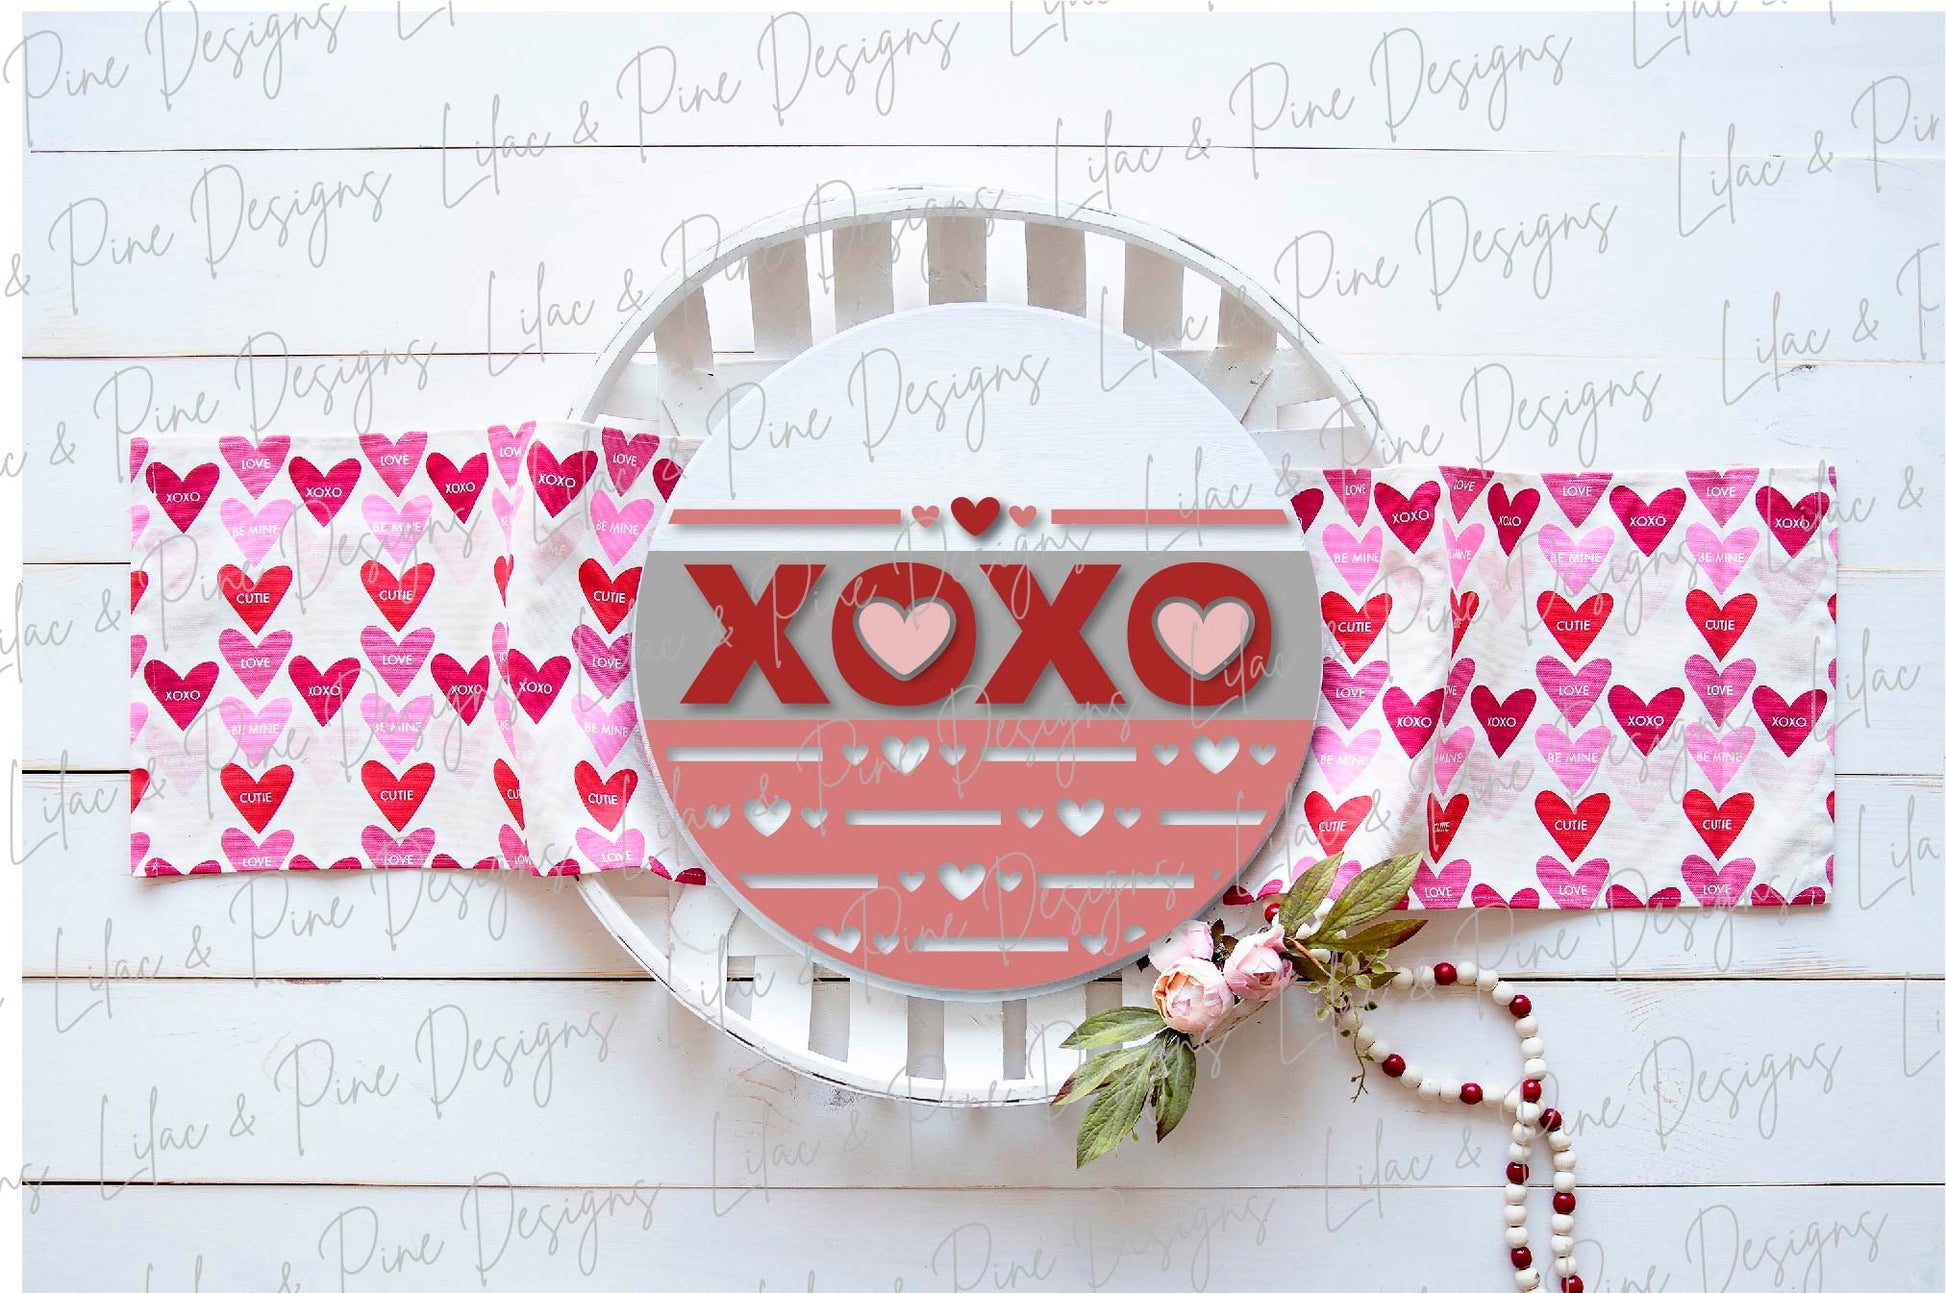 XOXO round sign SVG, Valentine door hanger, hugs and kisses door round svg, heart pattern, Valentine decor, Glowforge file, laser svg